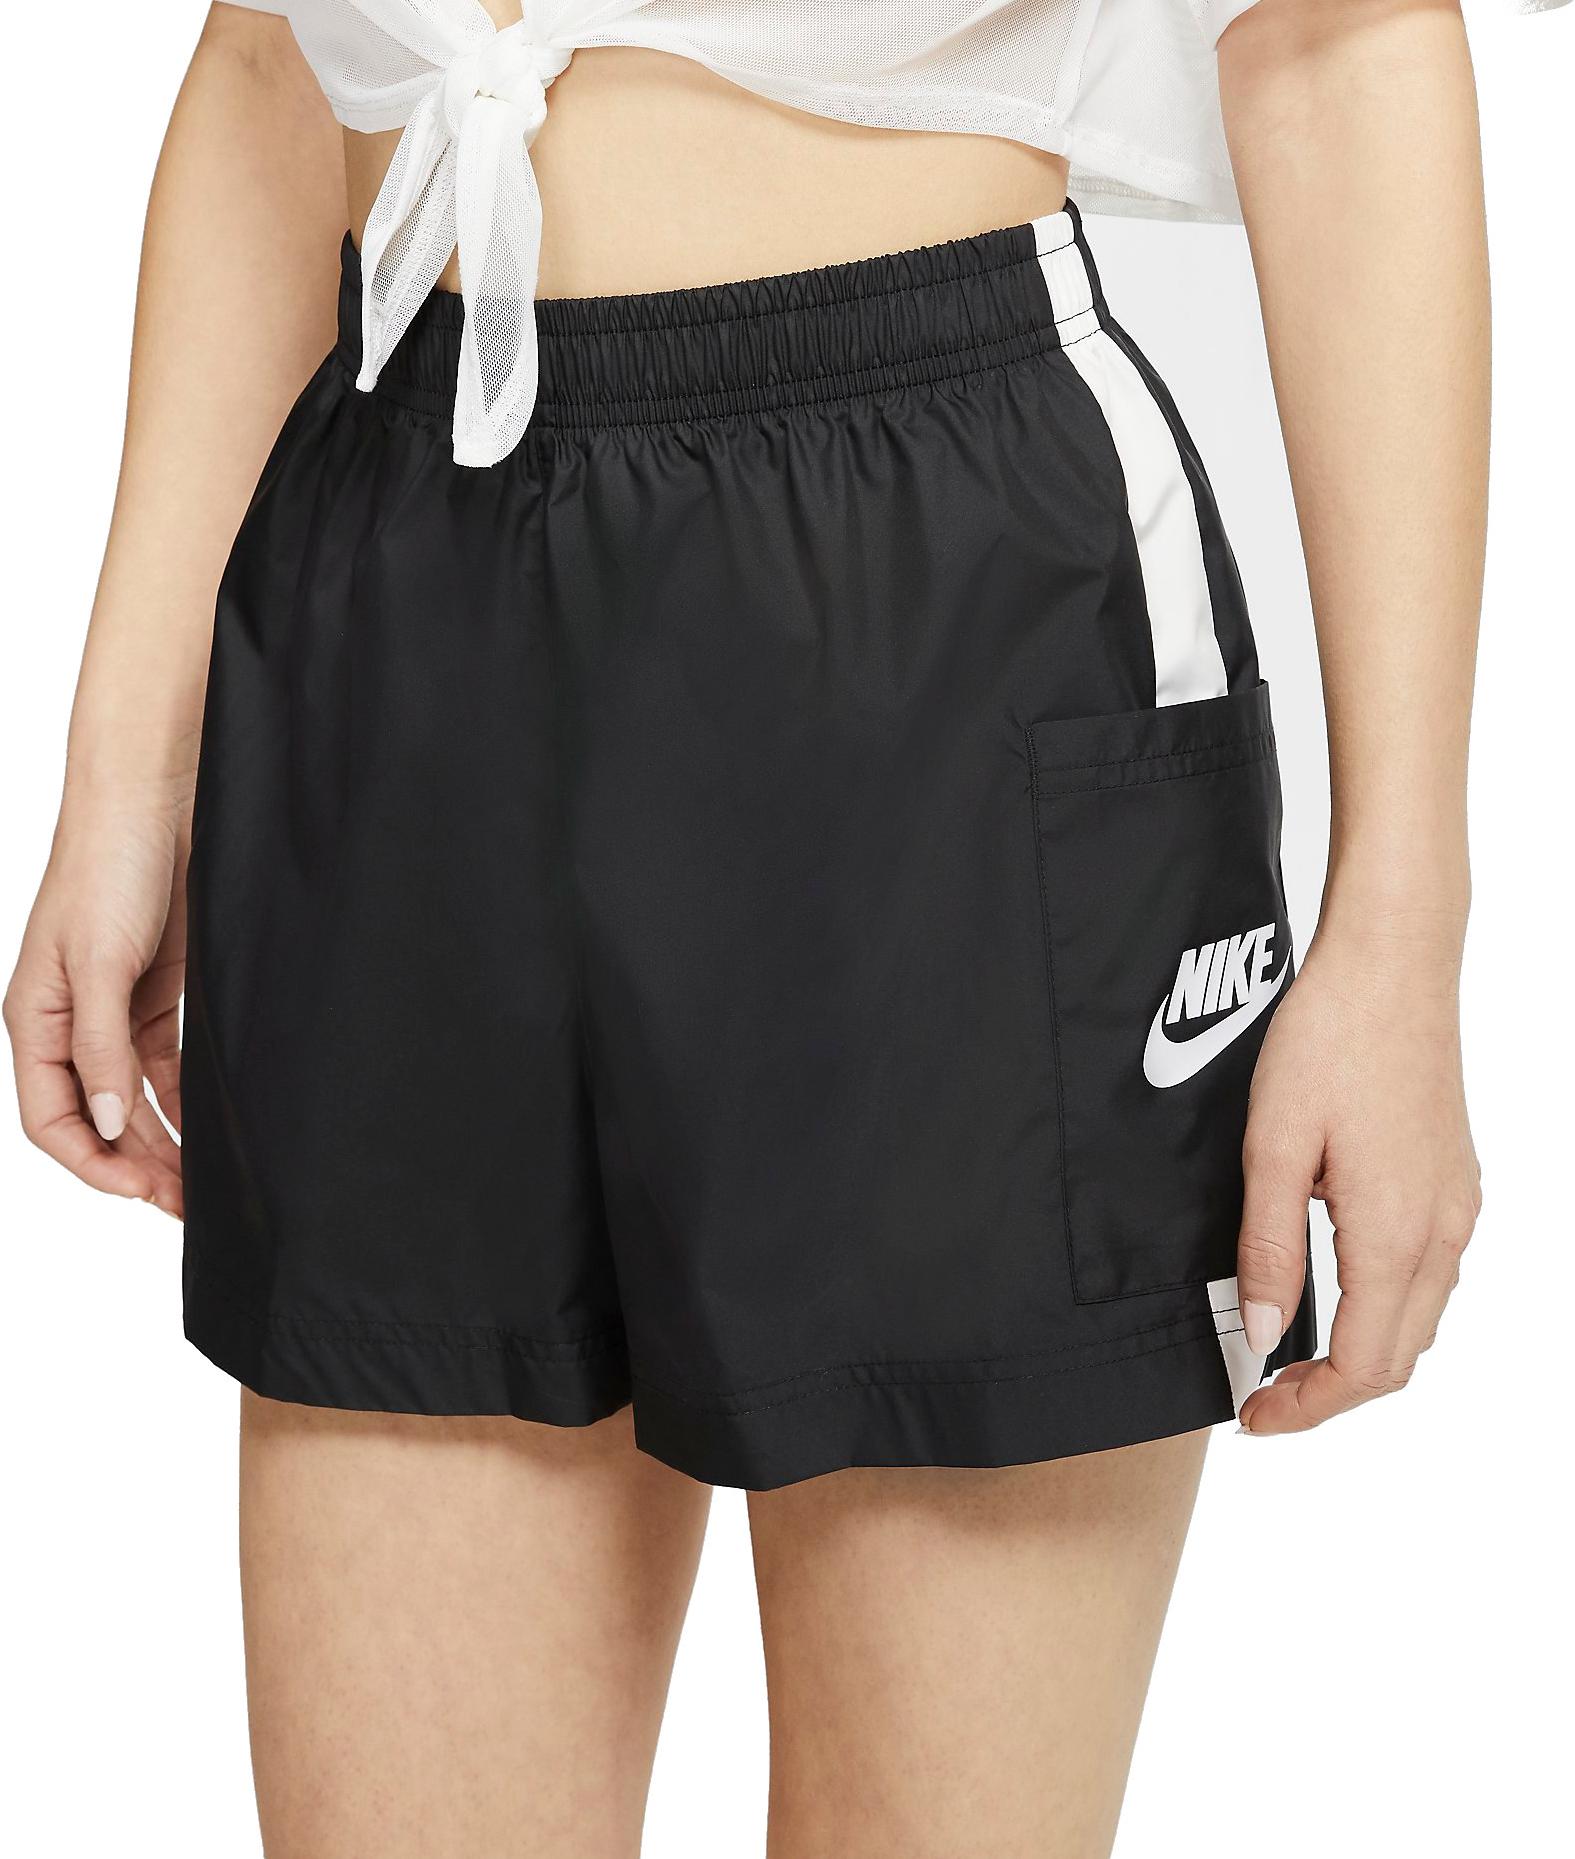 Sorturi Nike Sportswear Women s Woven Shorts